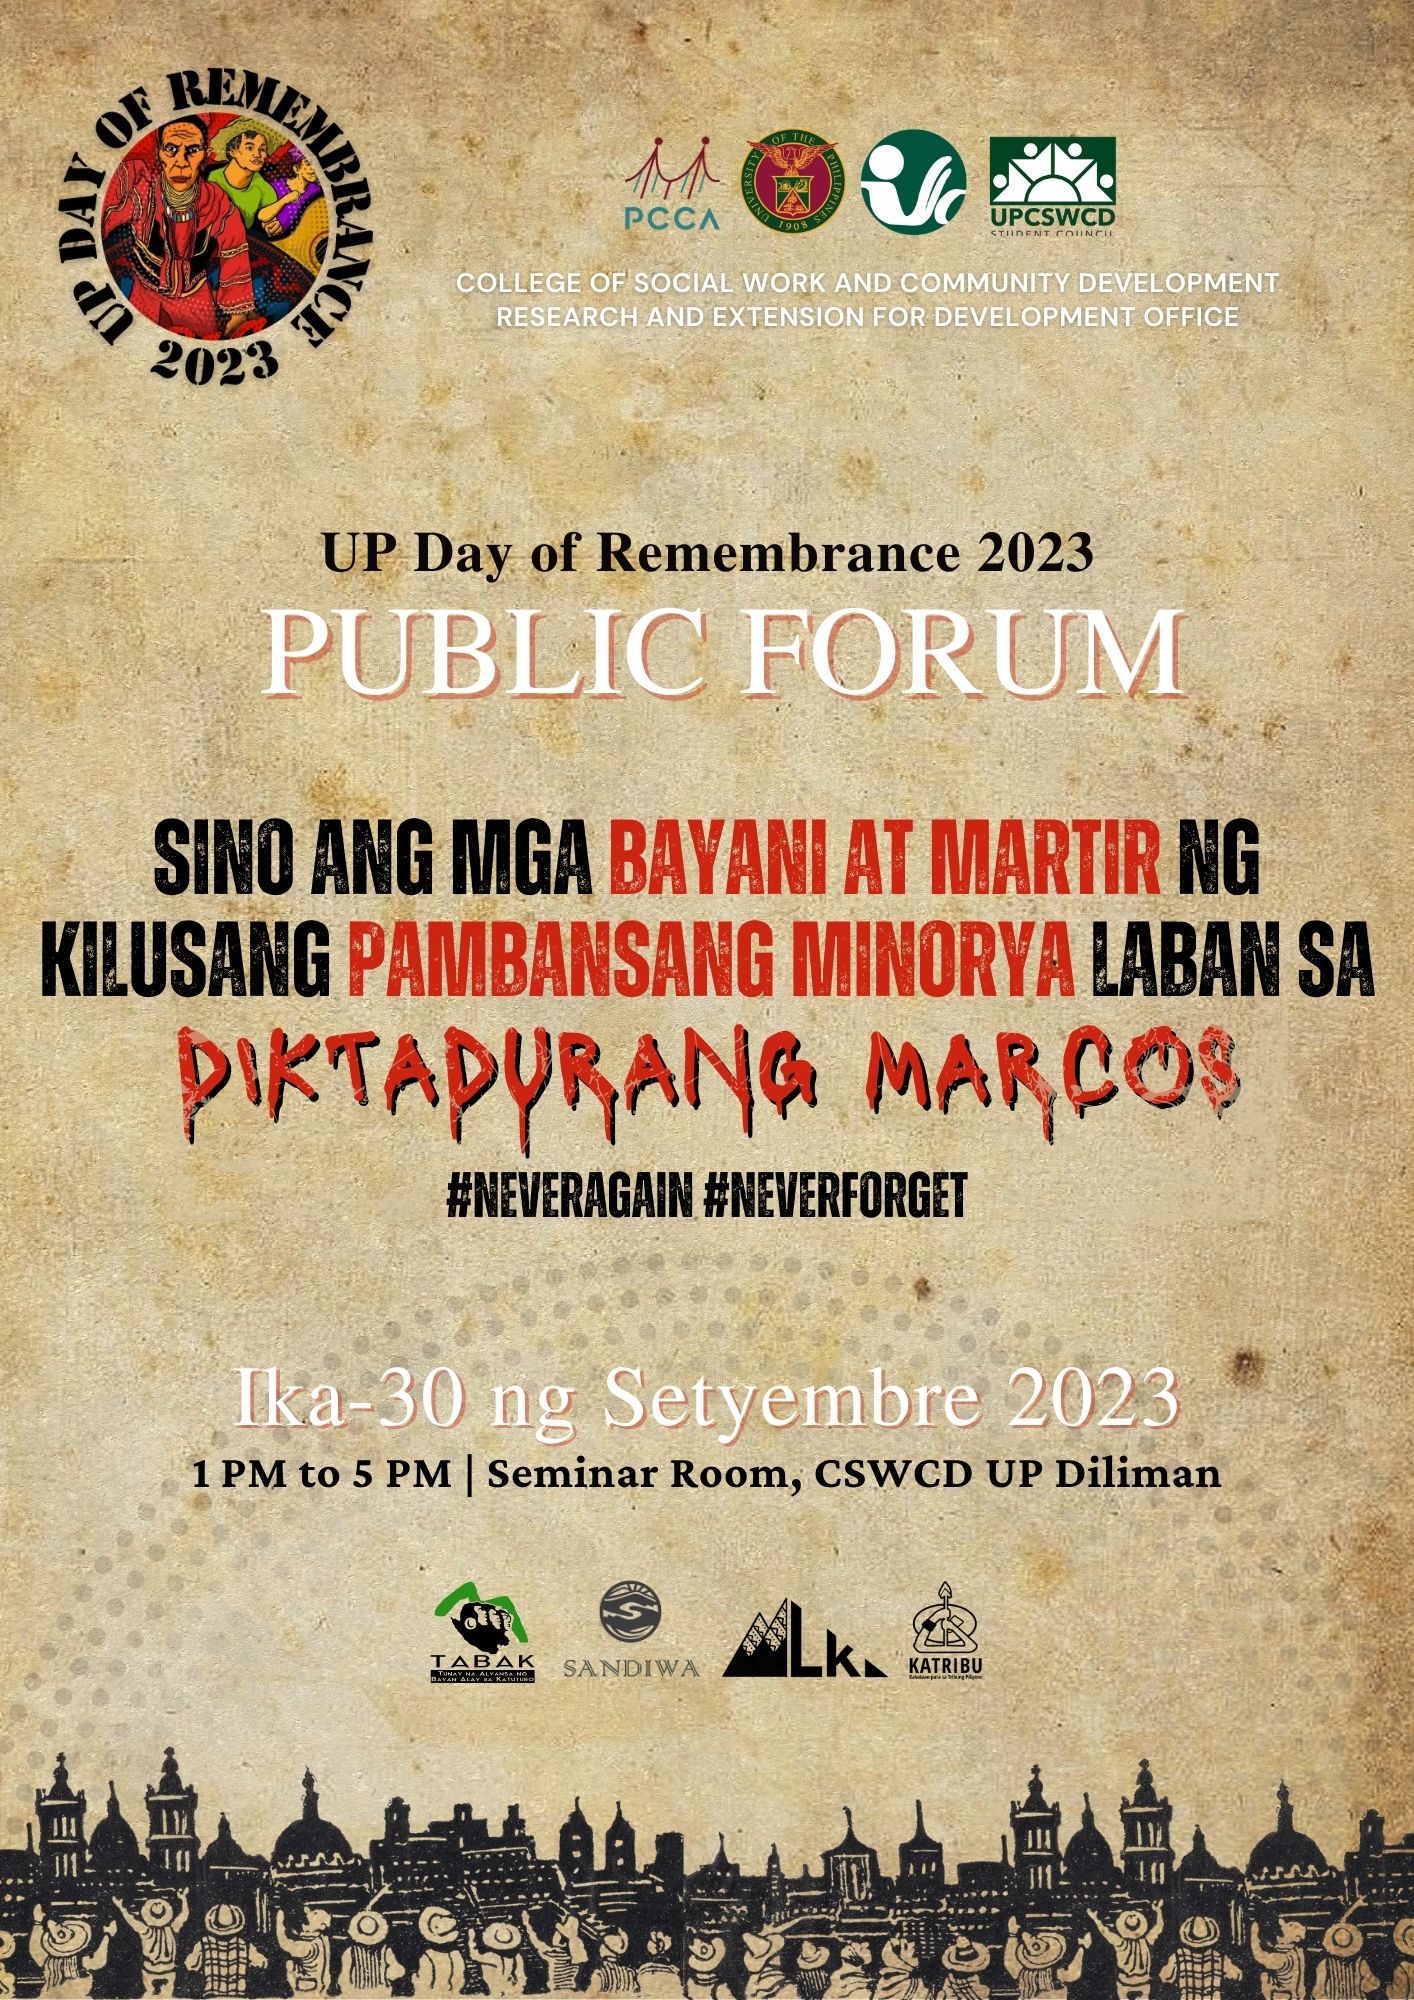 September 30, 2023 | CSWCD Day of Remembrance 2023 Public Forum: Mga Bayani at Martir ng Pambansang Minorya